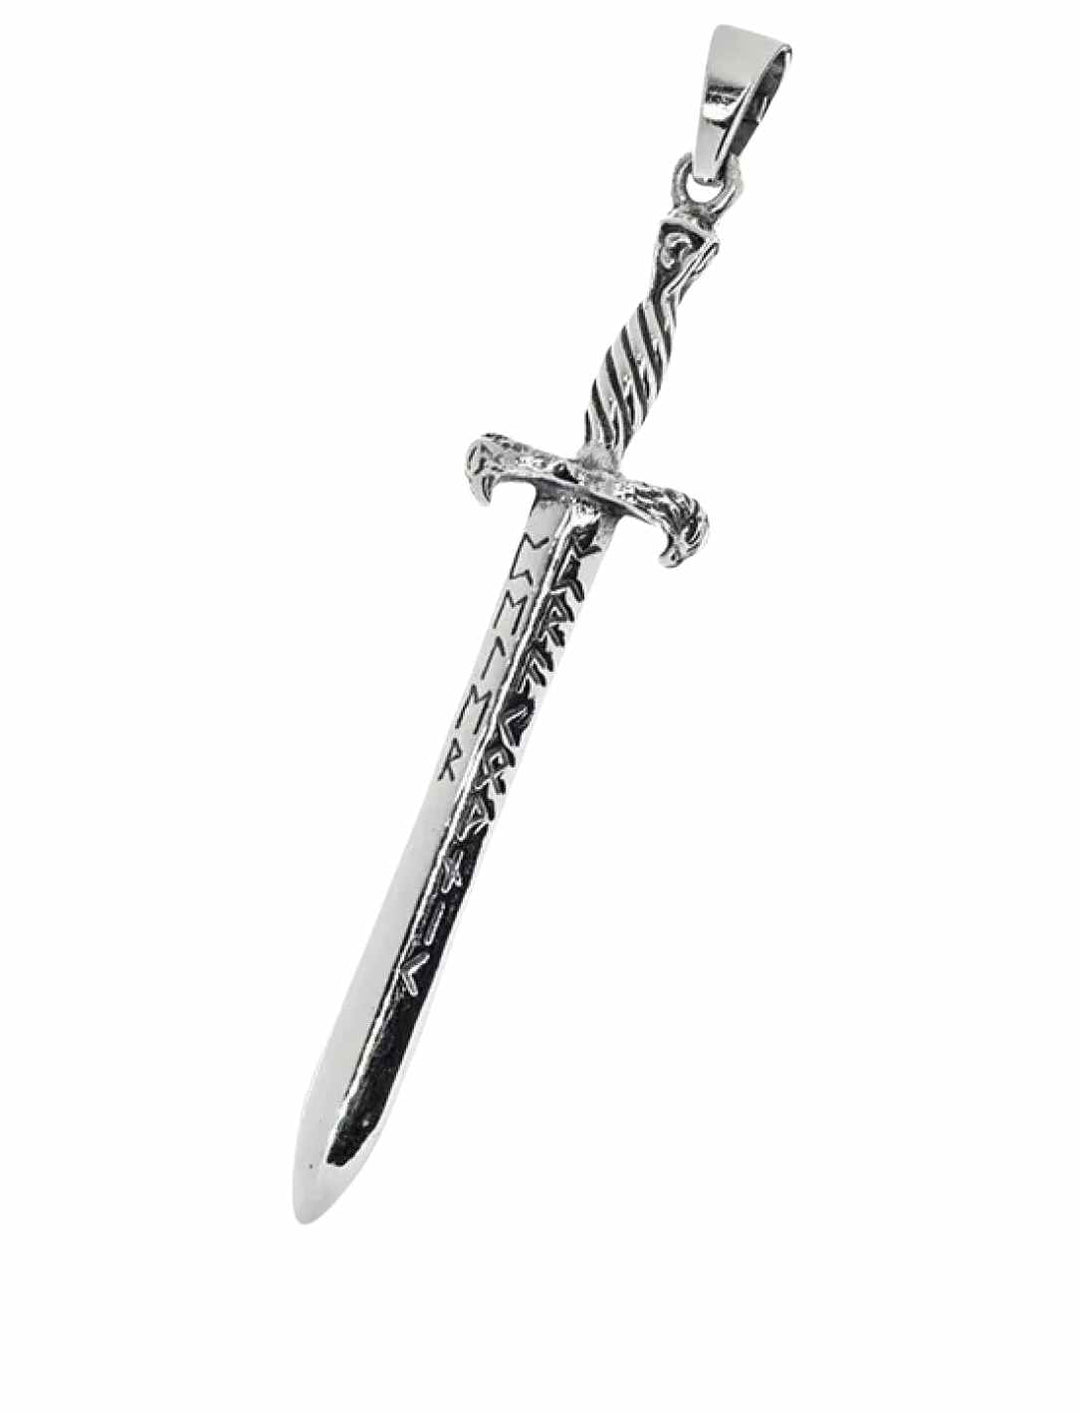 Runenschwert von Asgard Anhänger – Meisterhaftes Design eines 925 Sterling Silber Schwertes mit Runenverzierungen, inspiriert von nordischer Mythologie, auf weißem Hintergrund.